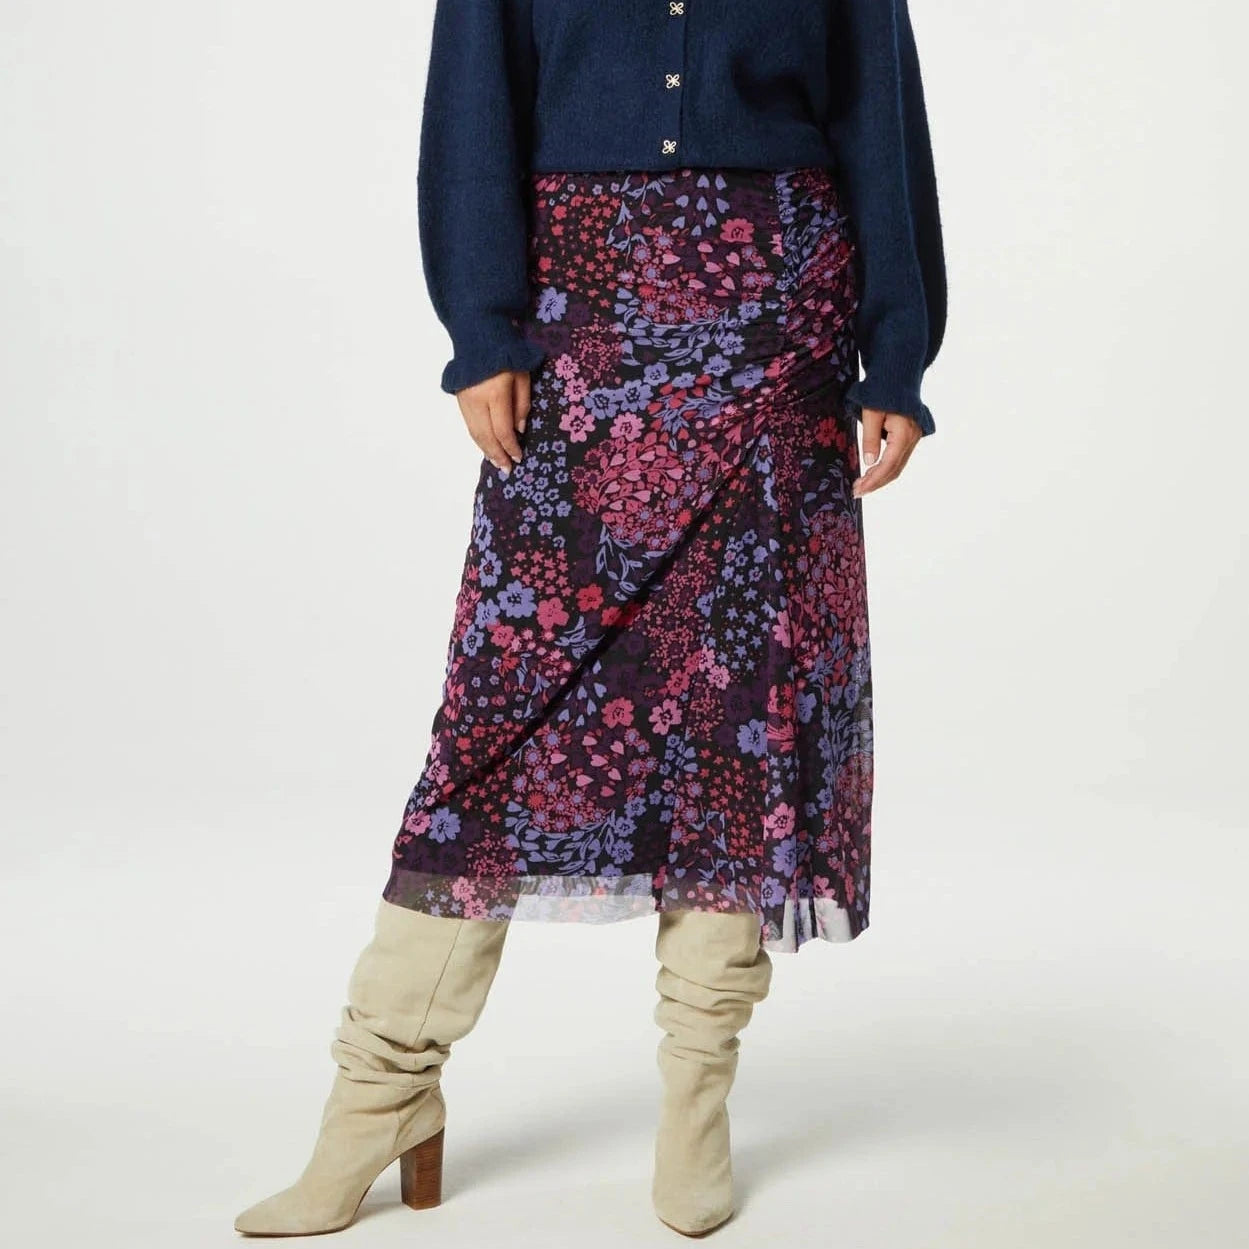 Fabienne Chapot Jessy Midi Skirt in Dreamscape